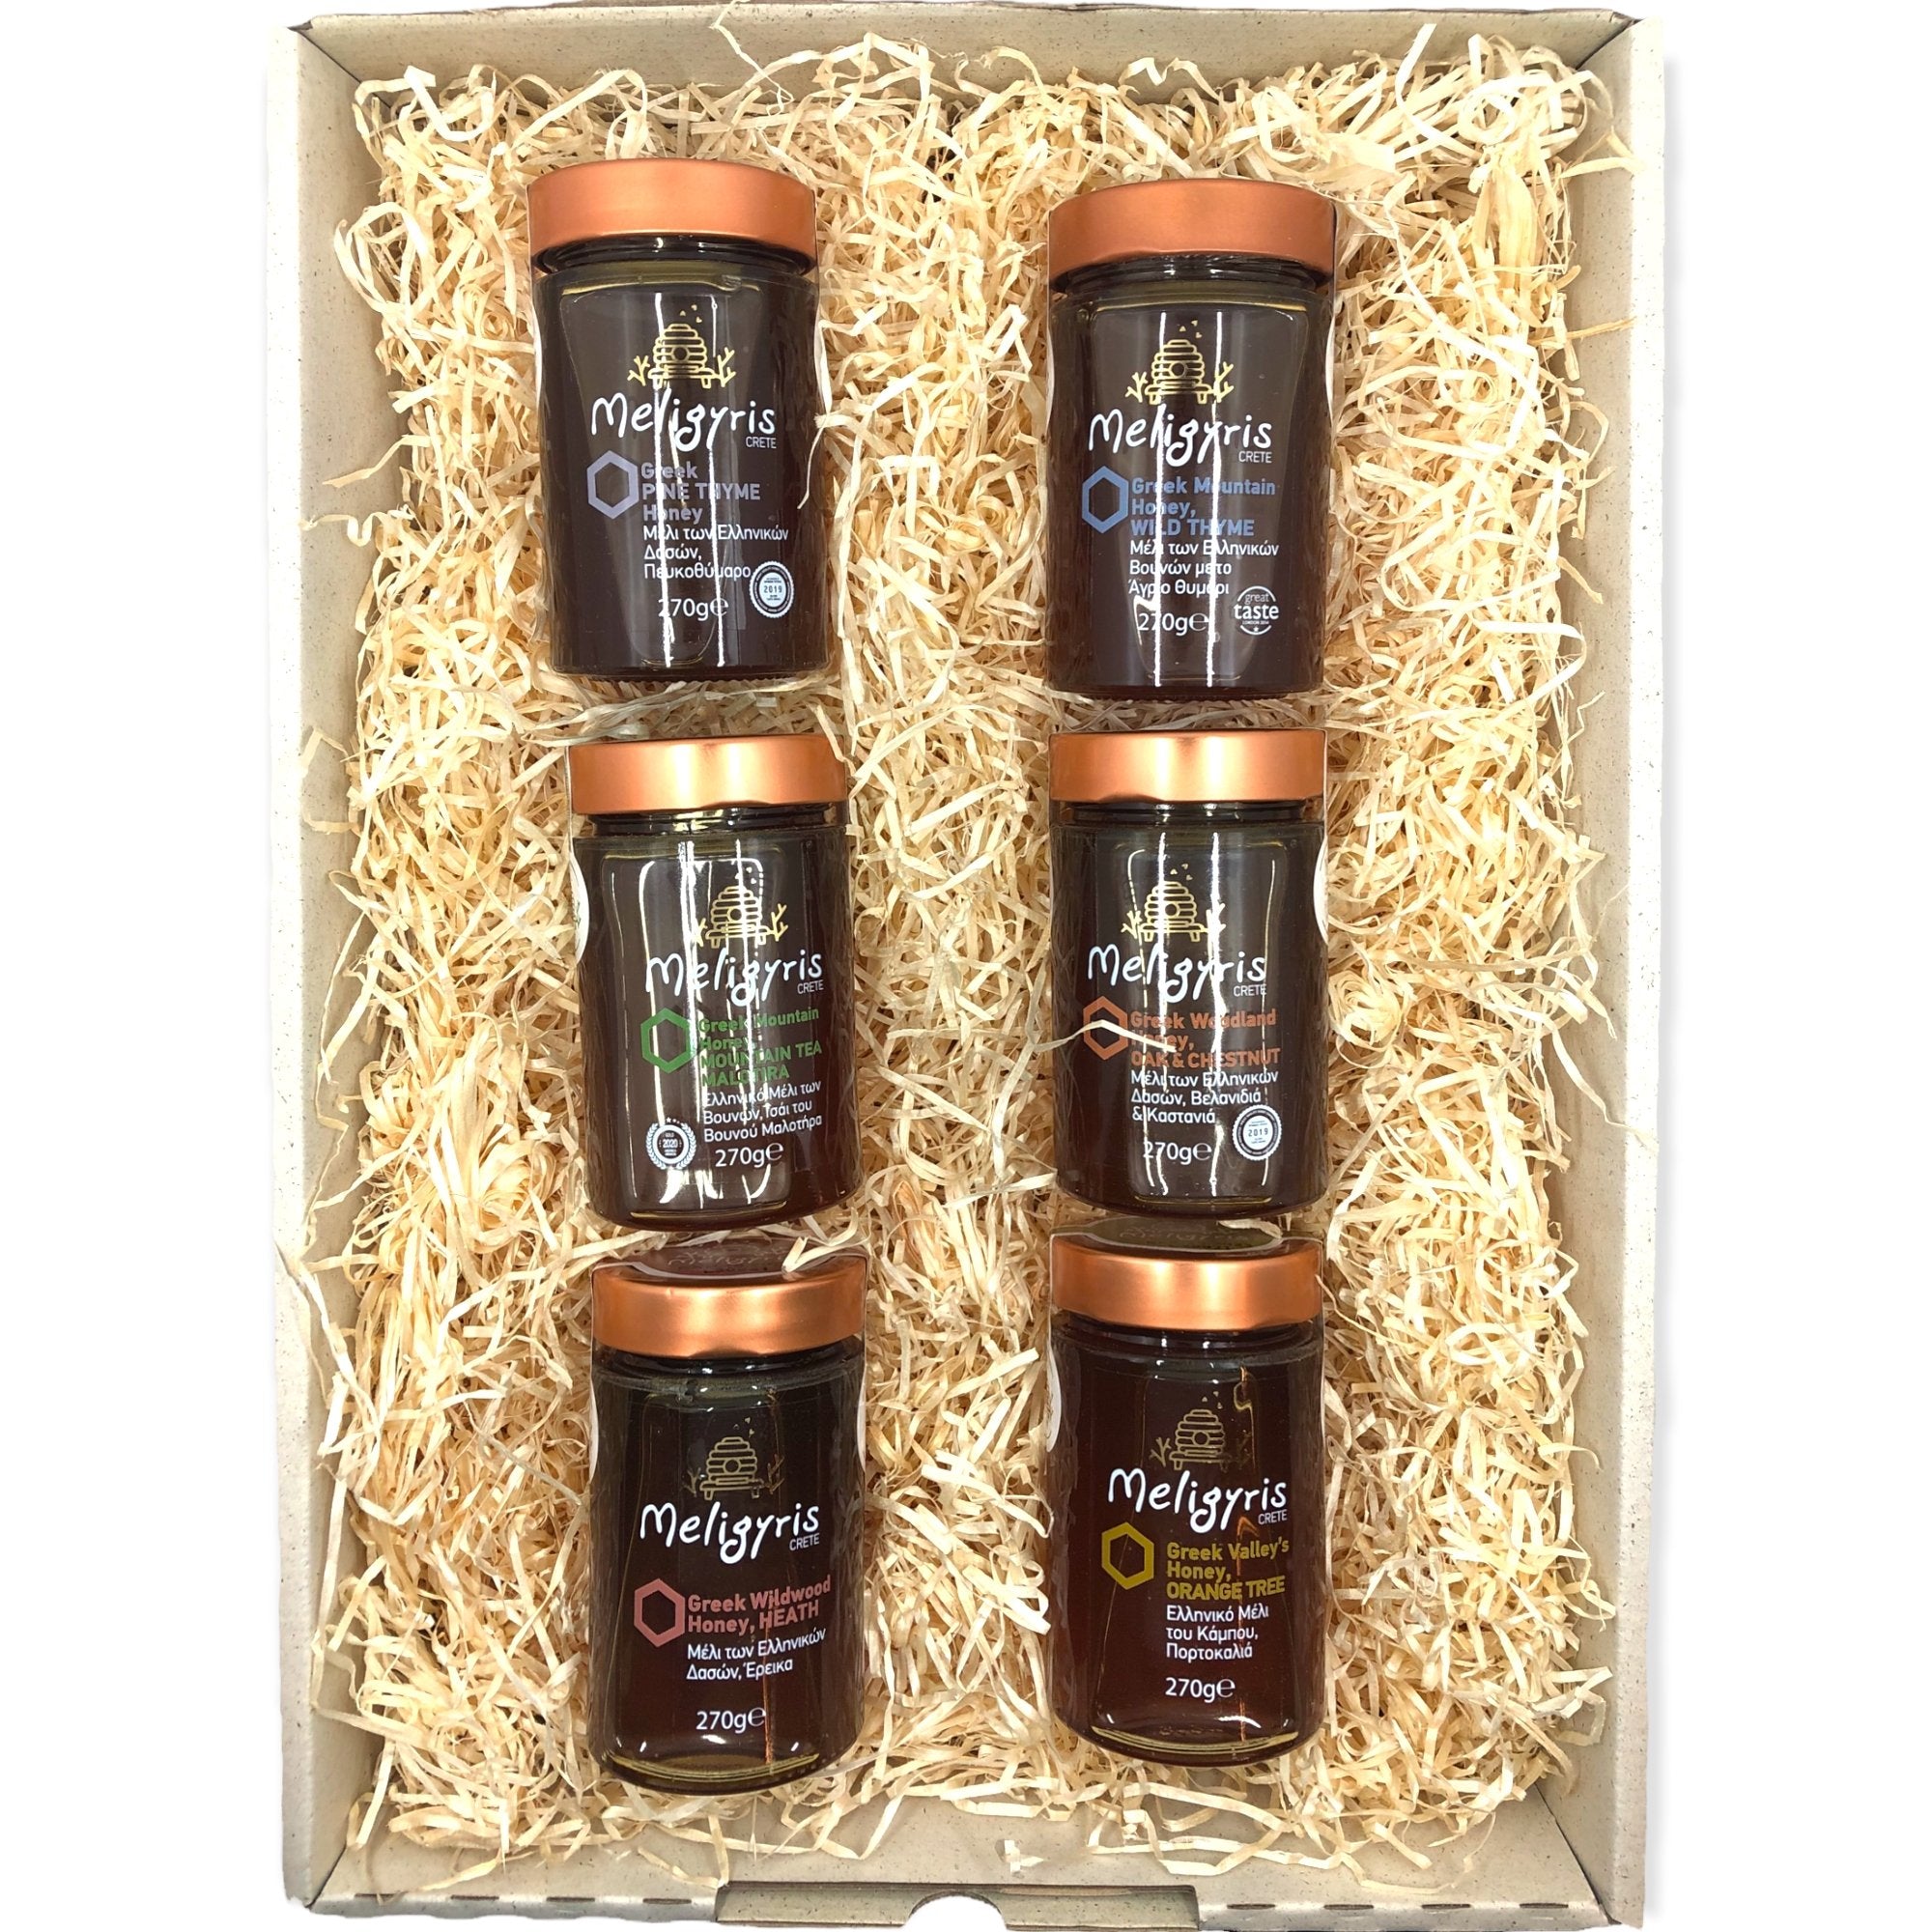 OlivenZauber Geschenkset “Griechischer Honig” - OlivenZauber - Olivenöl neu erleben